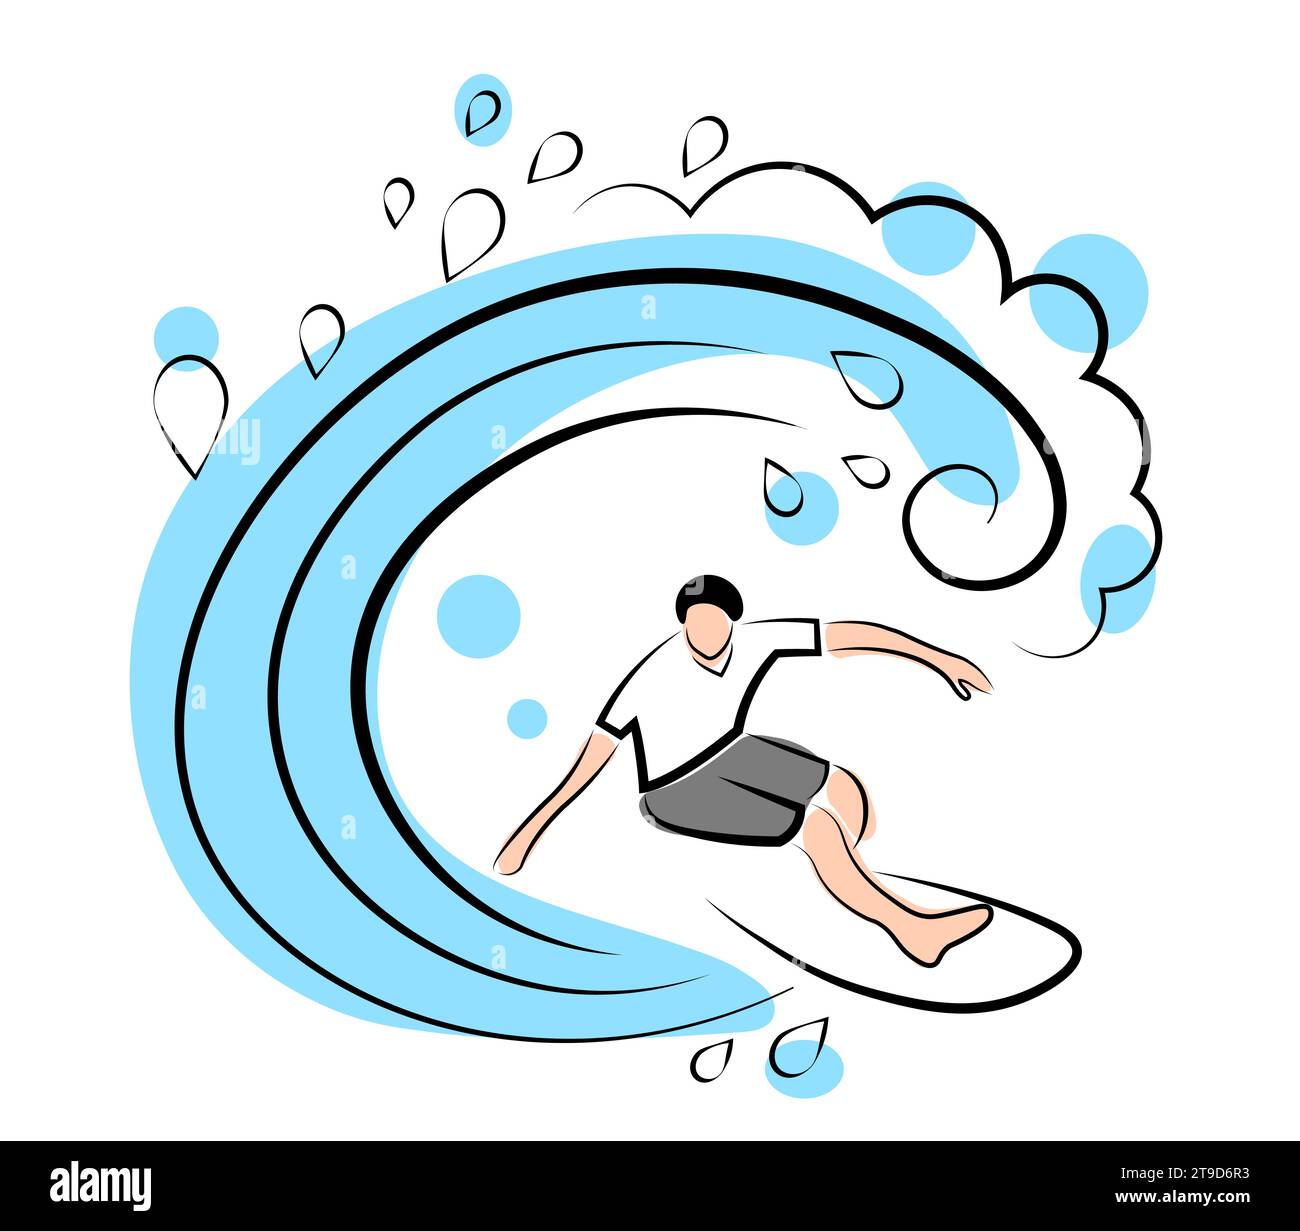 Il surfista cavalca sulla tavola. Tube in surf. Illustrazione vettoriale in stile doodle isolata su sfondo bianco Illustrazione Vettoriale